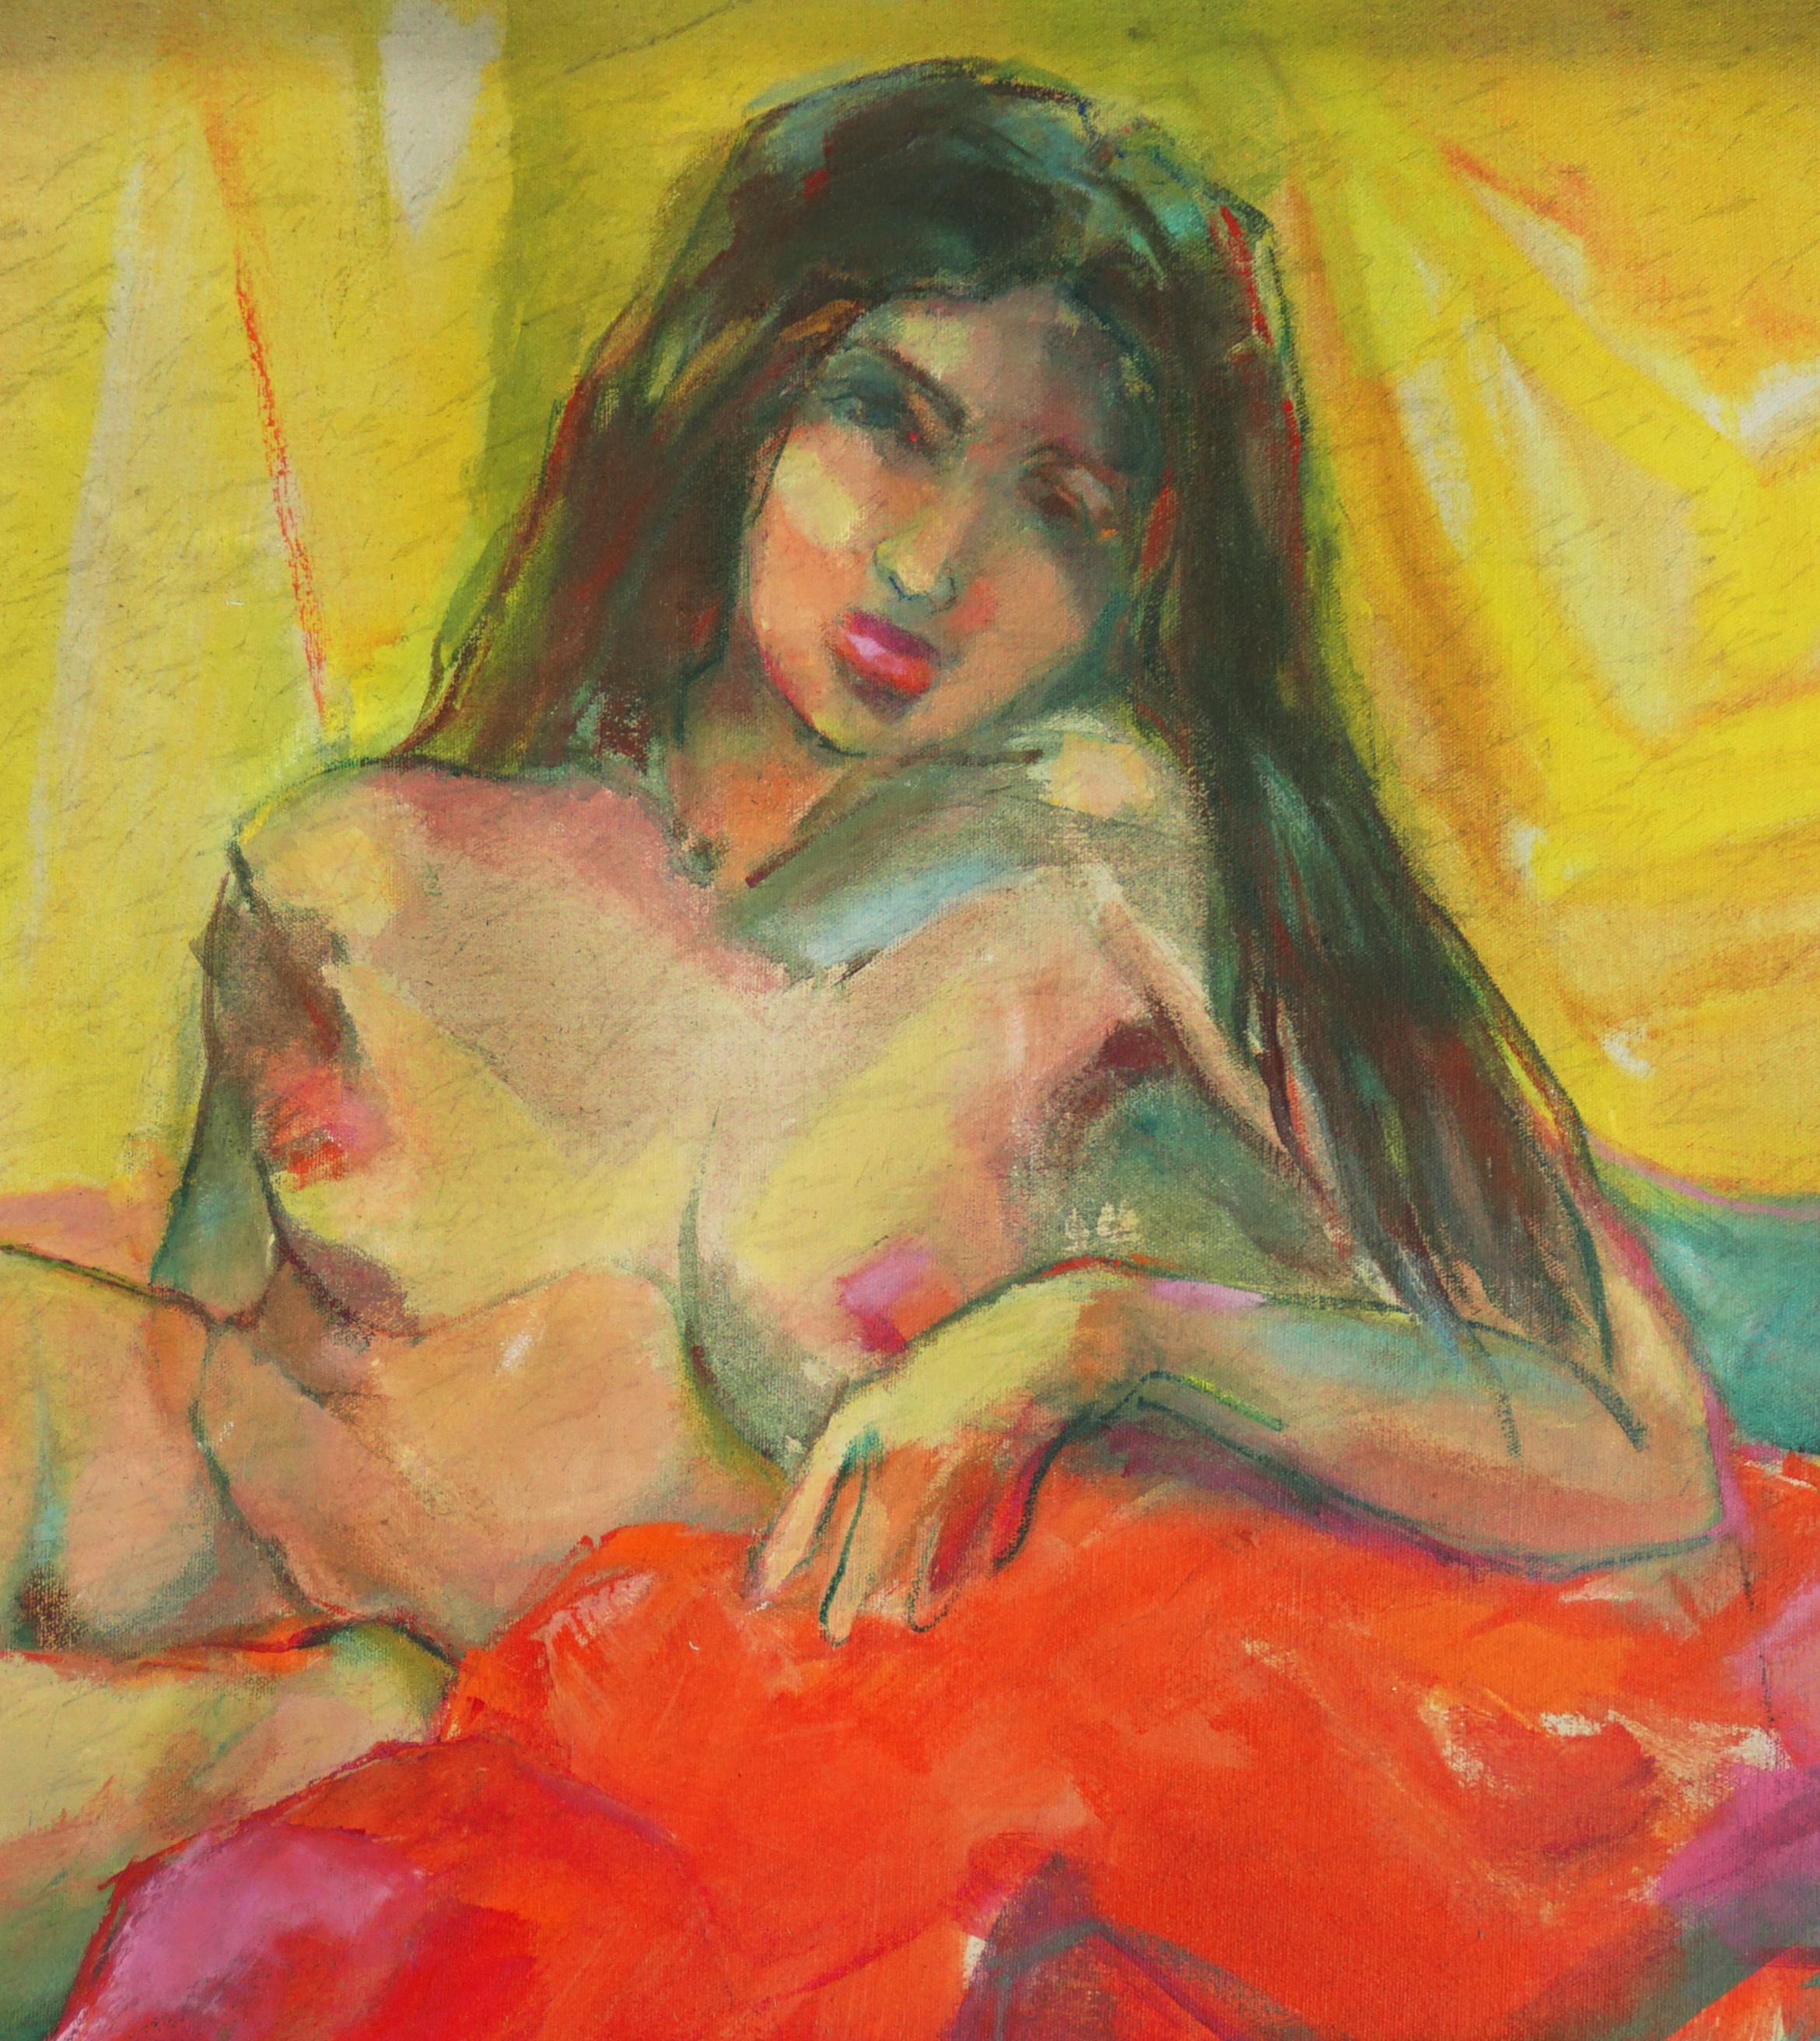 Liegende liegende Frau, Mid-Century Bay Area Nude Figurative mit roter Drapierung (Amerikanischer Impressionismus), Painting, von Marjorie Cathcart